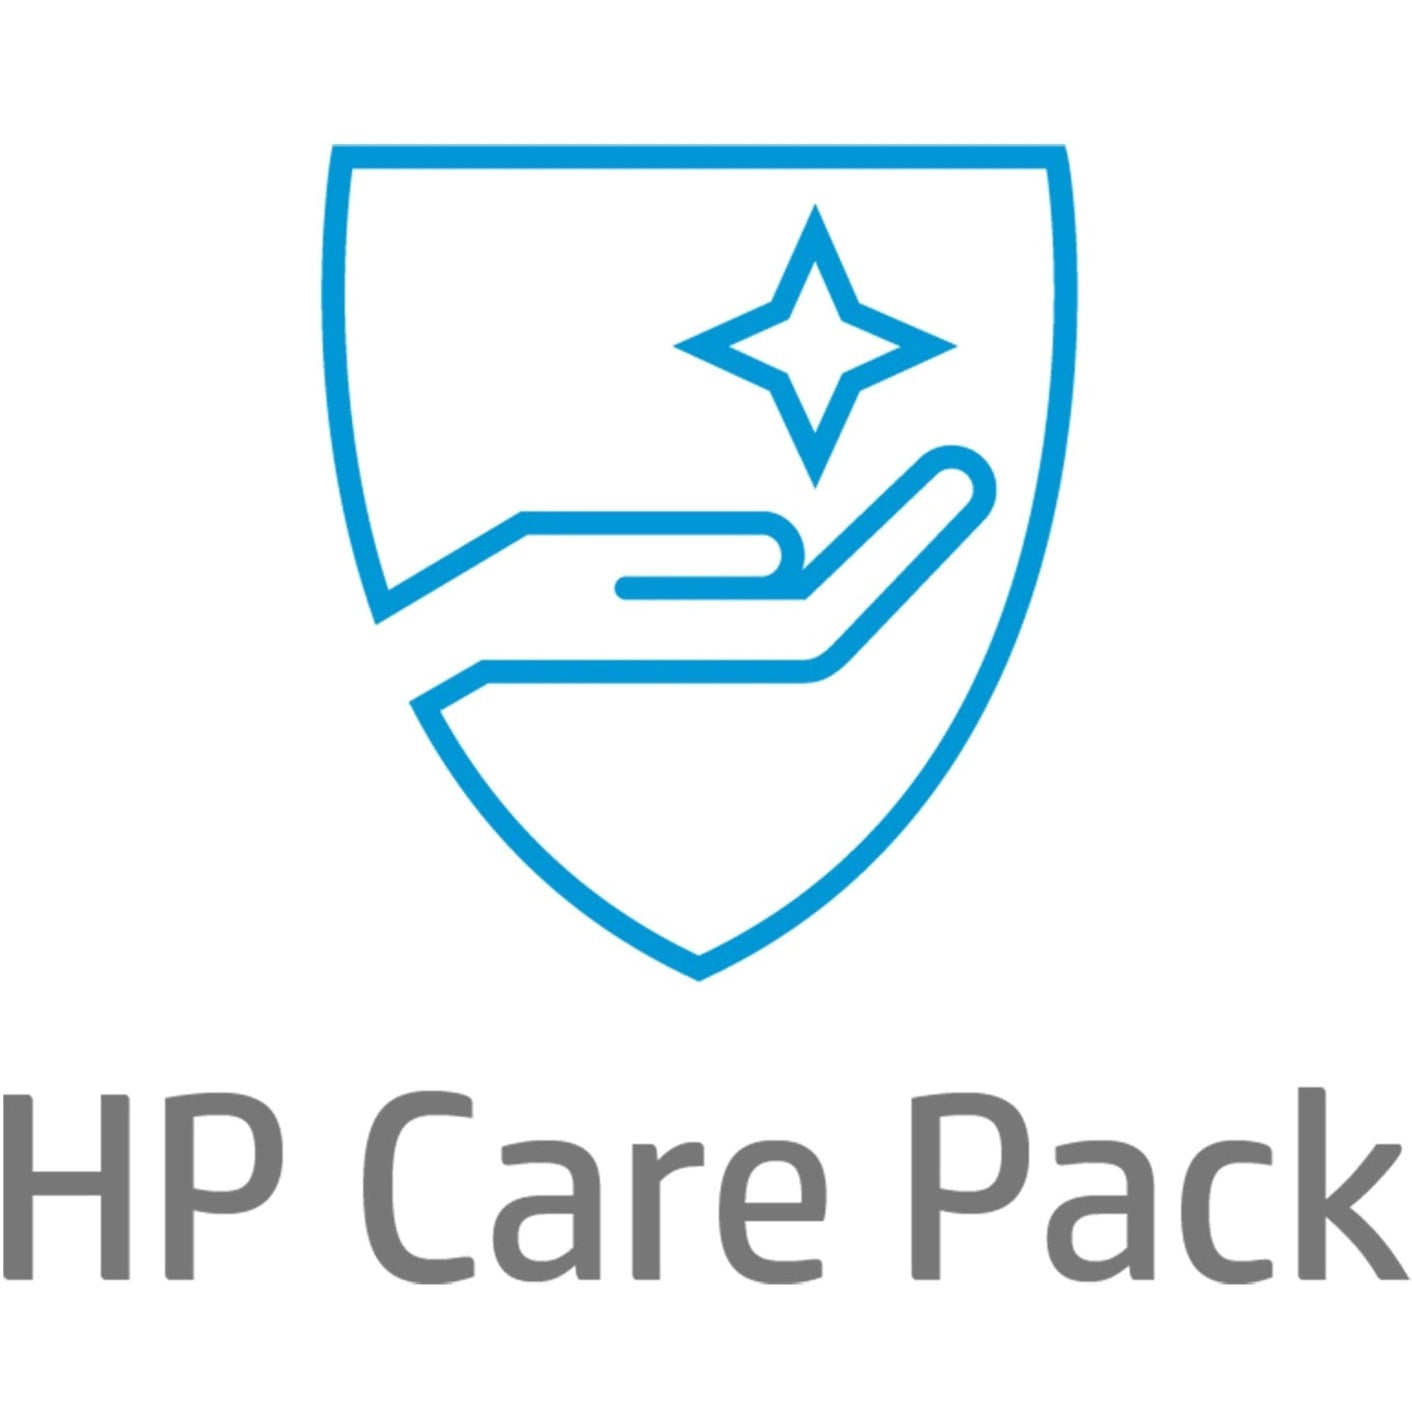 HP Care Pack - 1 Year - Service (U6569PE)